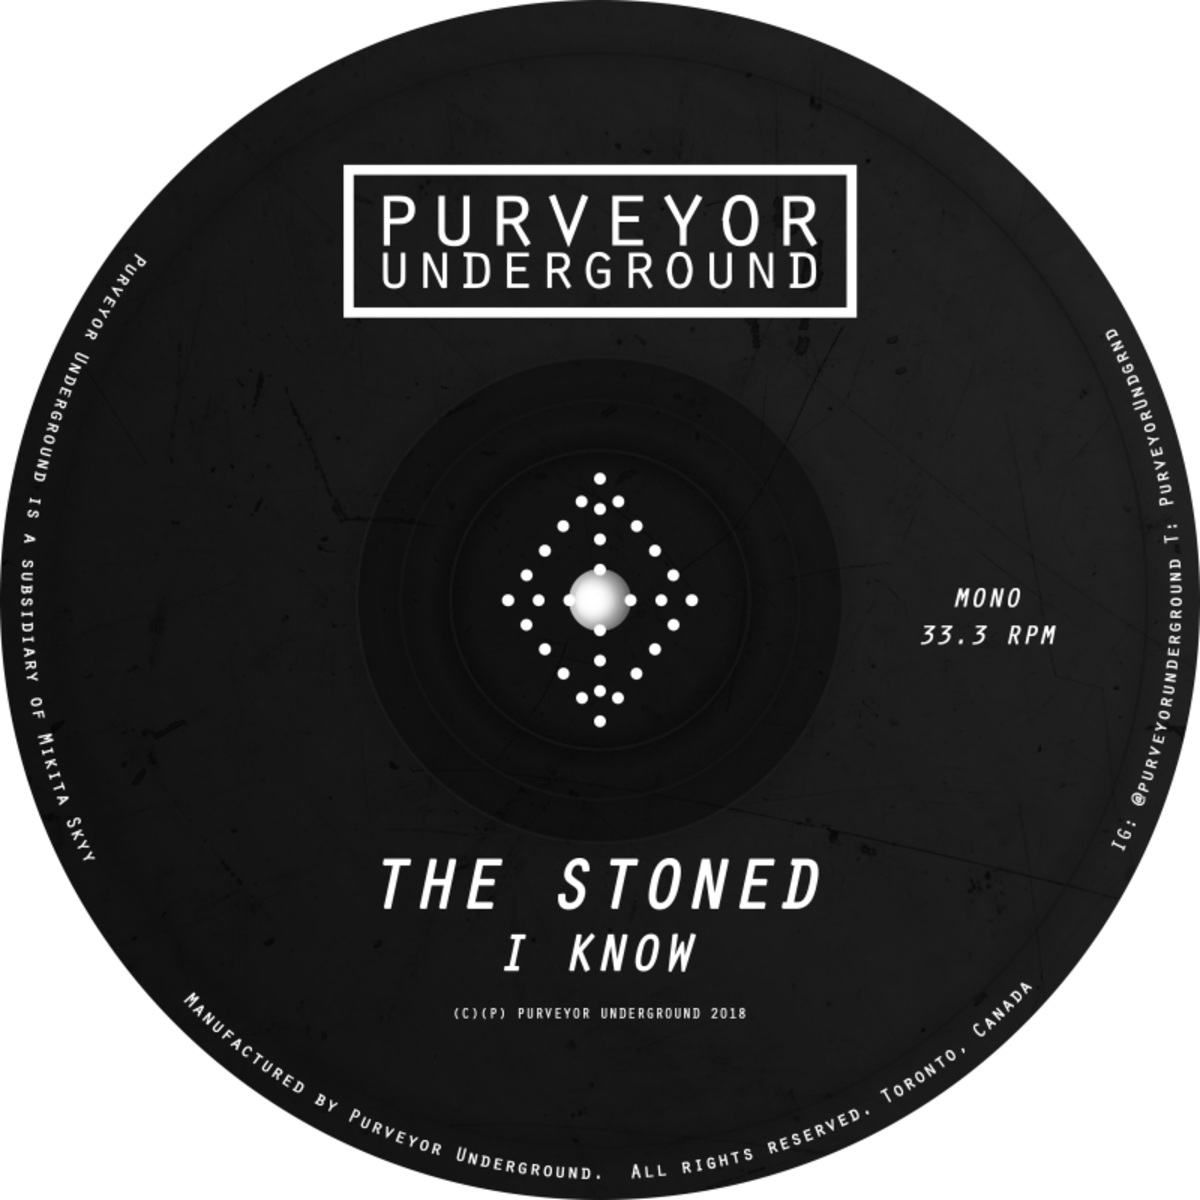 The Stoned - I Know / Purveyor Underground